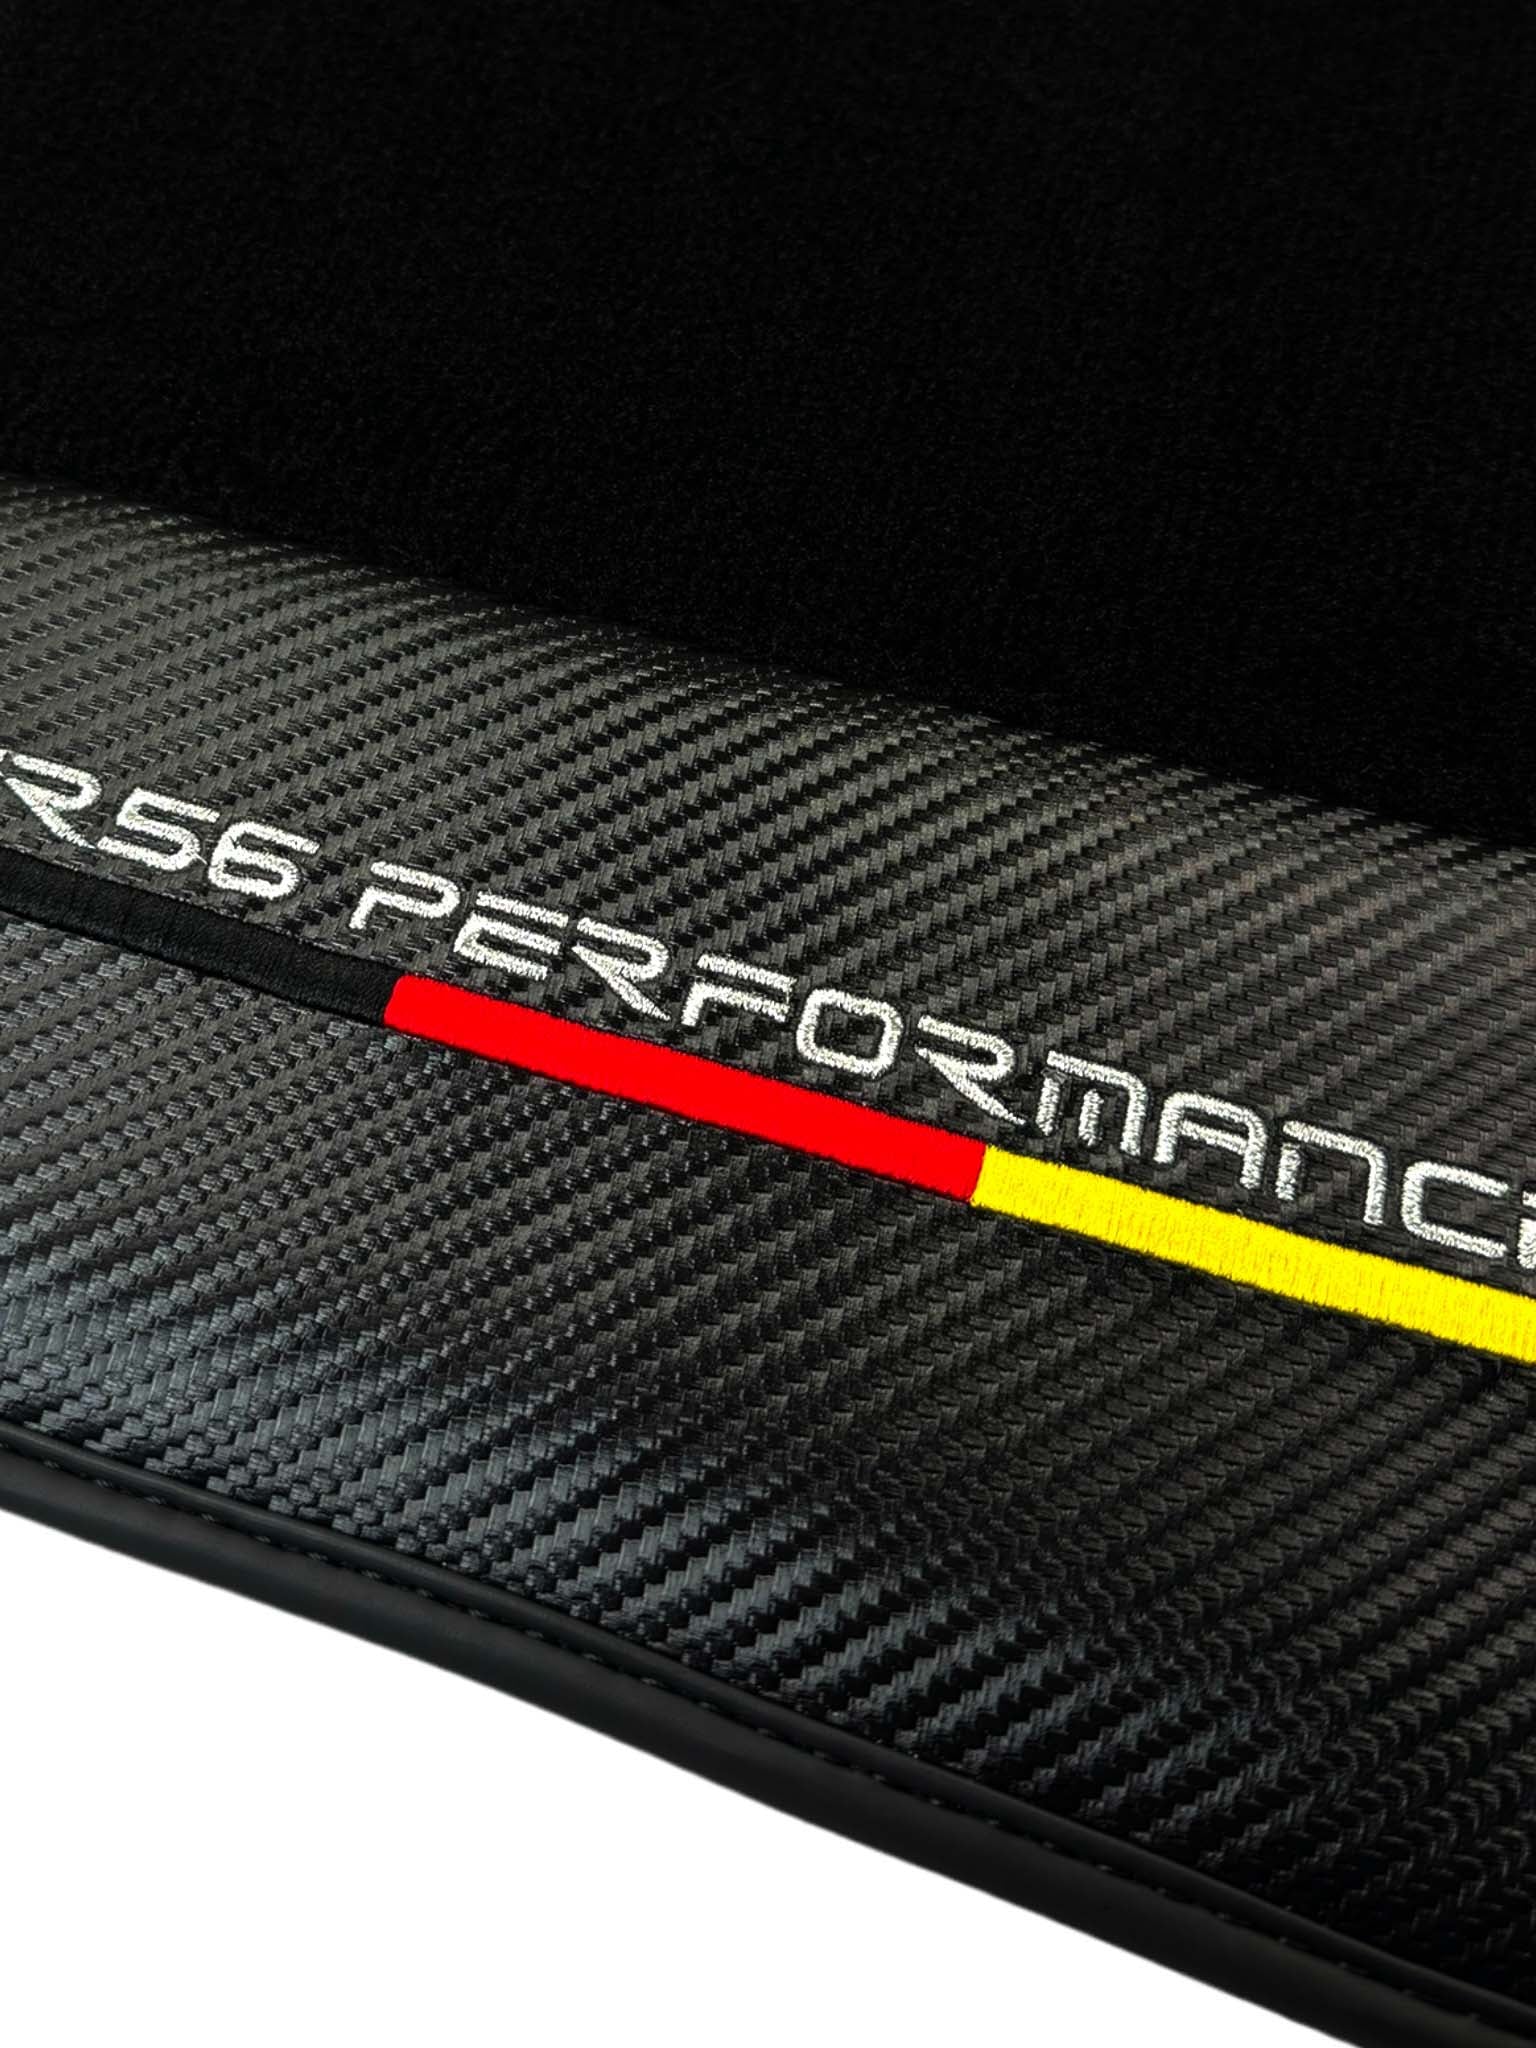 Black Floor Mats for Audi A6 - C6 Avant Facelift (2008-2011) | ER56 Performance